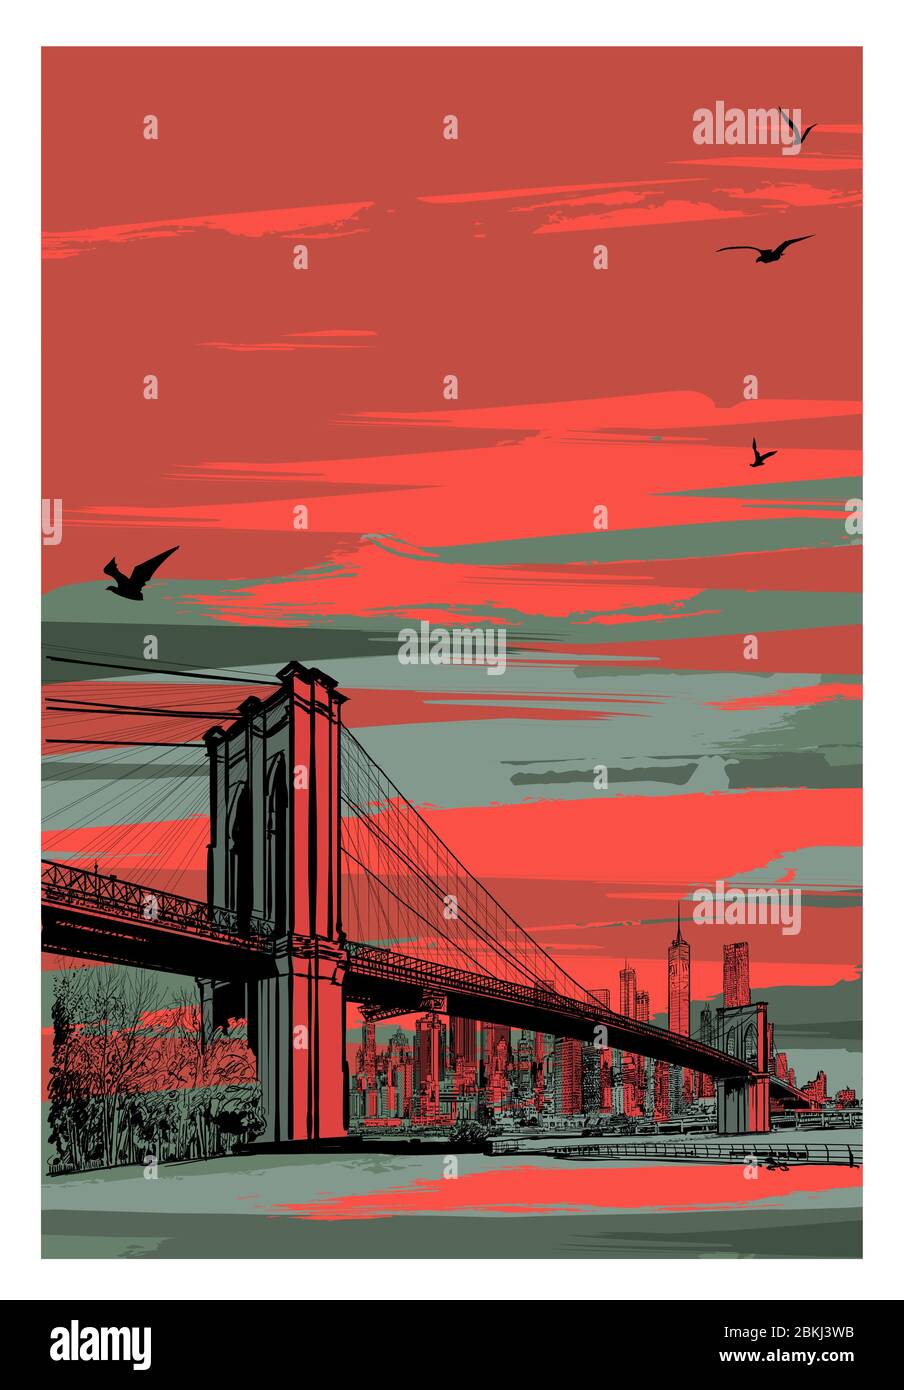 Ponte storico di Brooklyn e Lower Manhattan - illustrazione vettoriale (ideale per la stampa su tessuto o carta, poster o carta da parati, decorazione della casa) Illustrazione Vettoriale